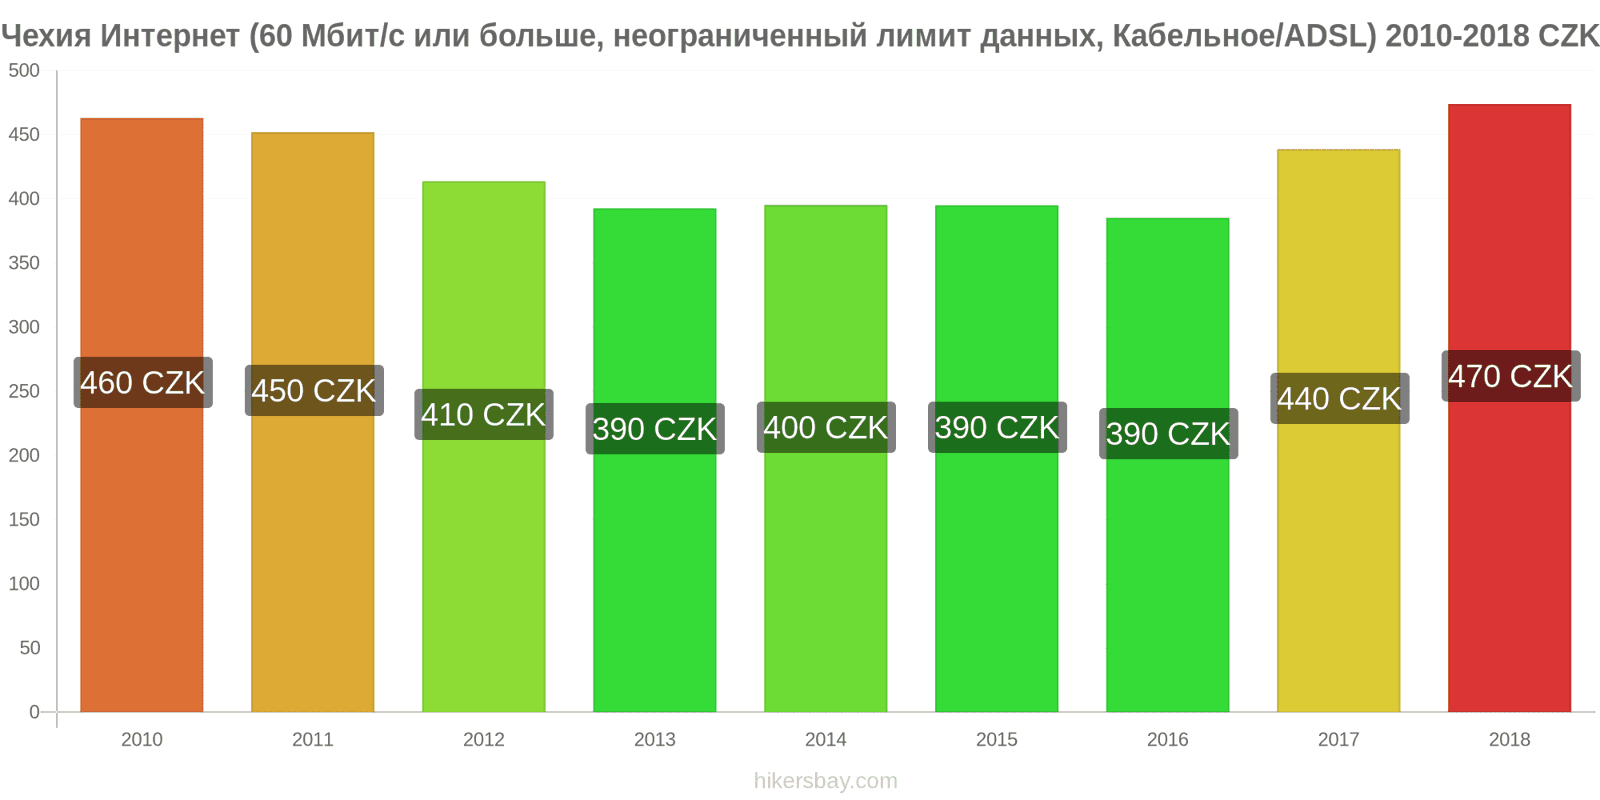 Чехия изменения цен Интернет (60 Мбит/с или больше, неограниченный лимит данных, кабель/ADSL) hikersbay.com